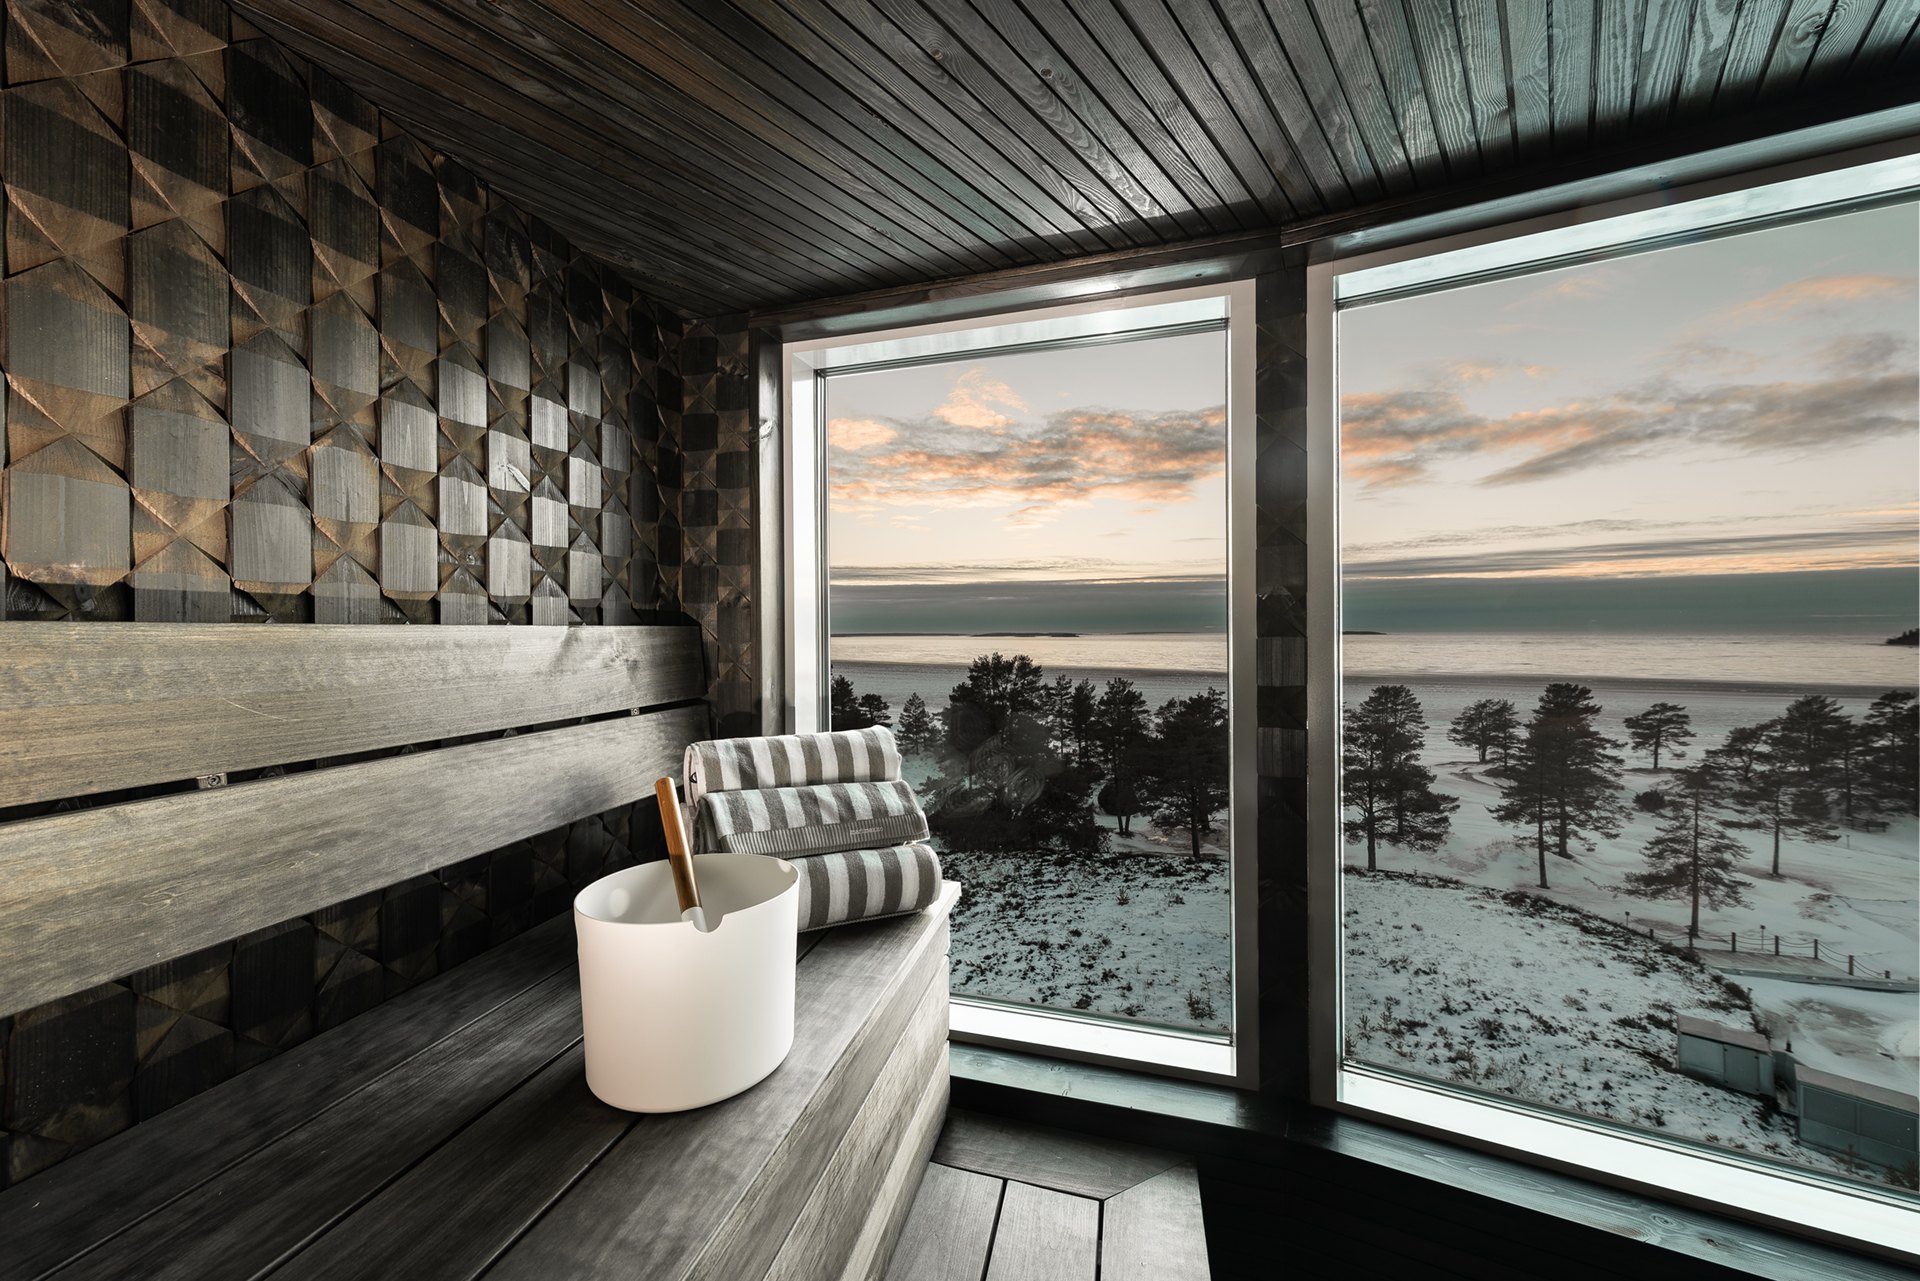 Virkistyshotelli Yyteri, sauna with a view